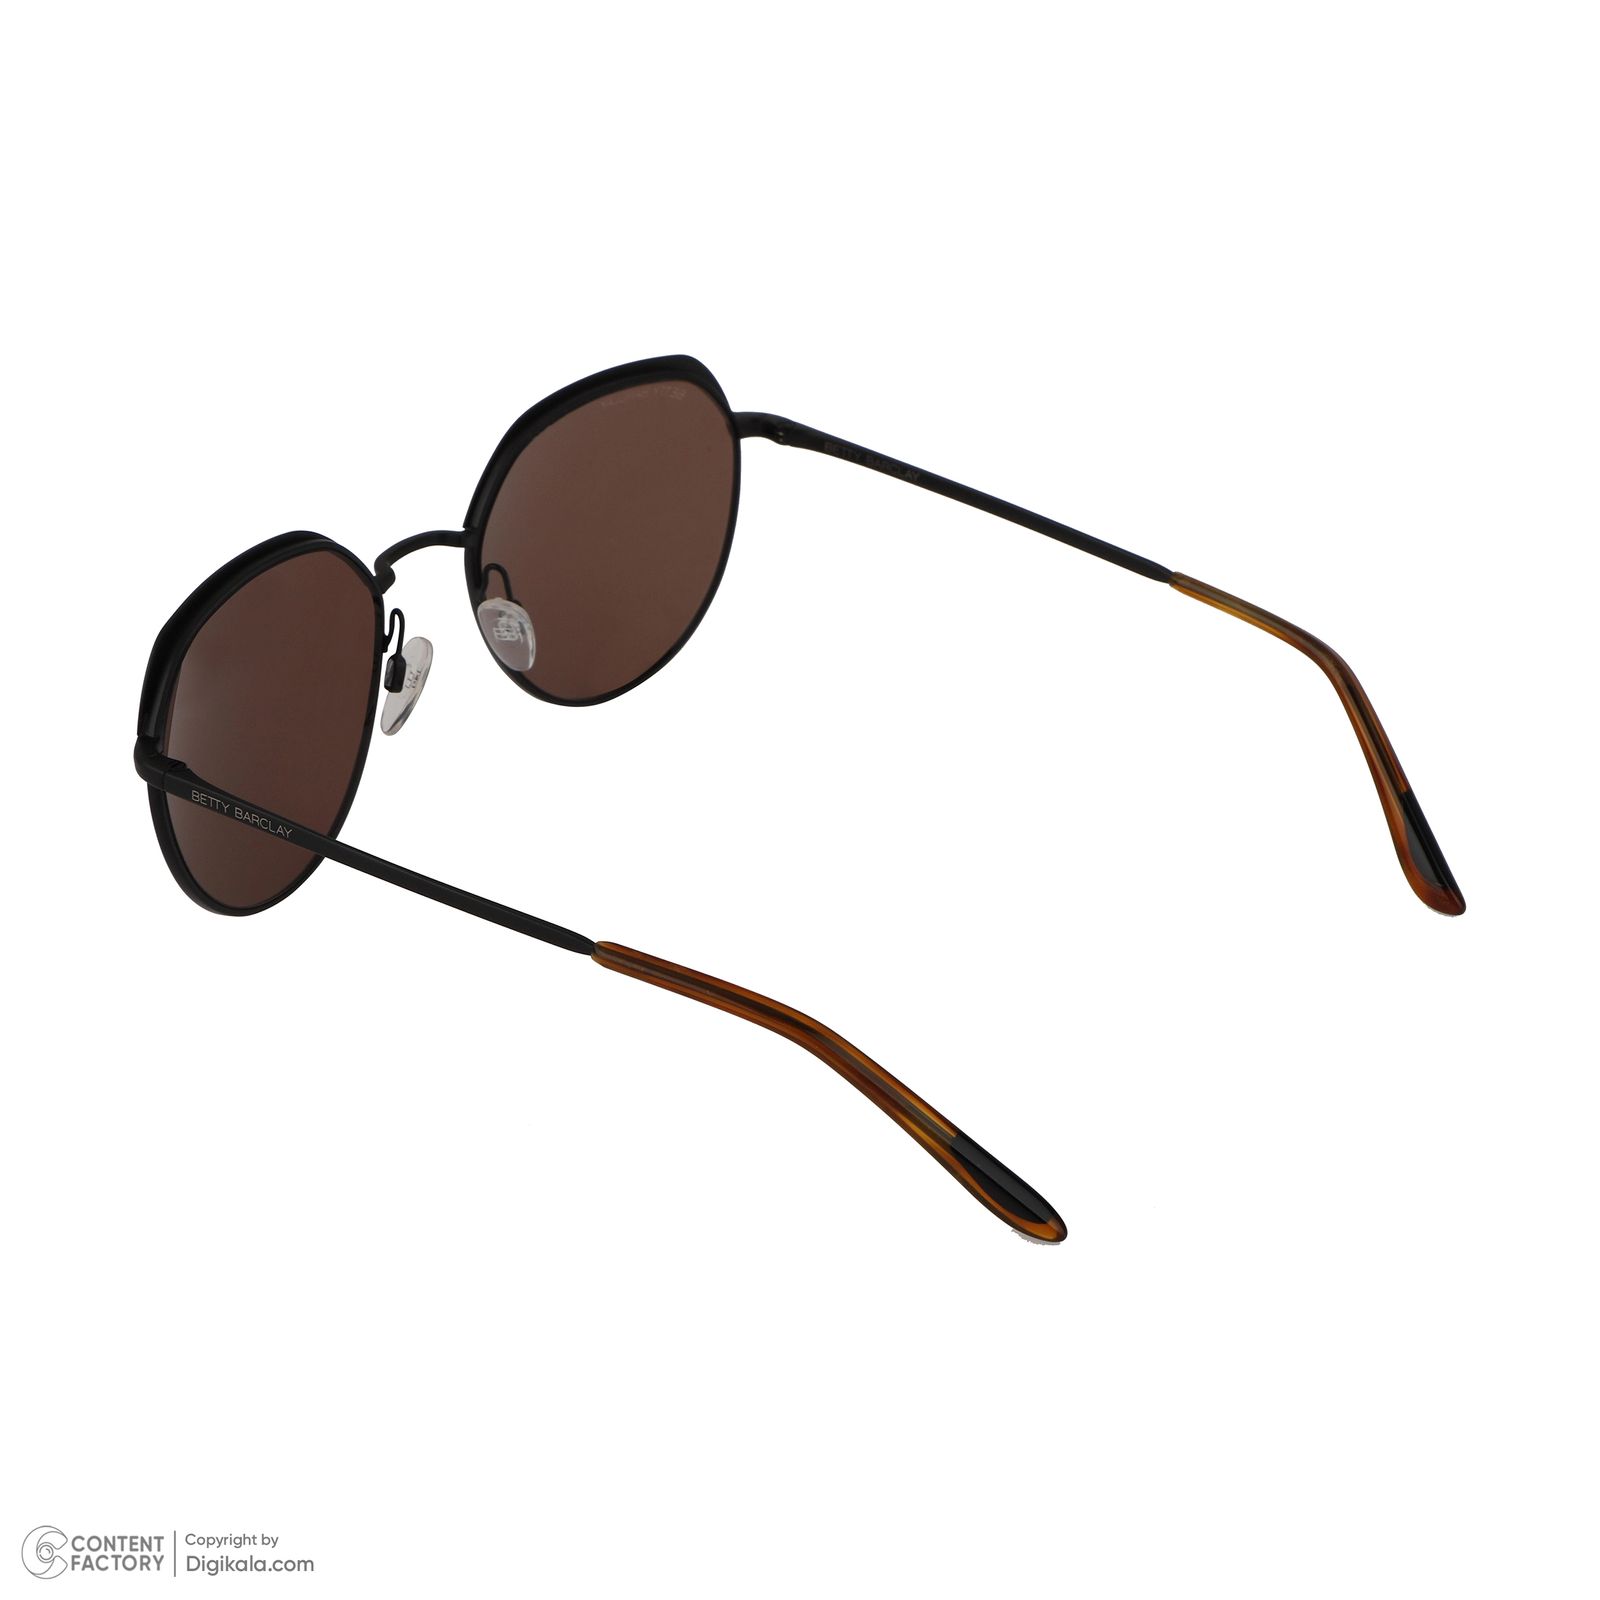 عینک آفتابی بتی بارکلی مدل 56159 col777 -  - 4